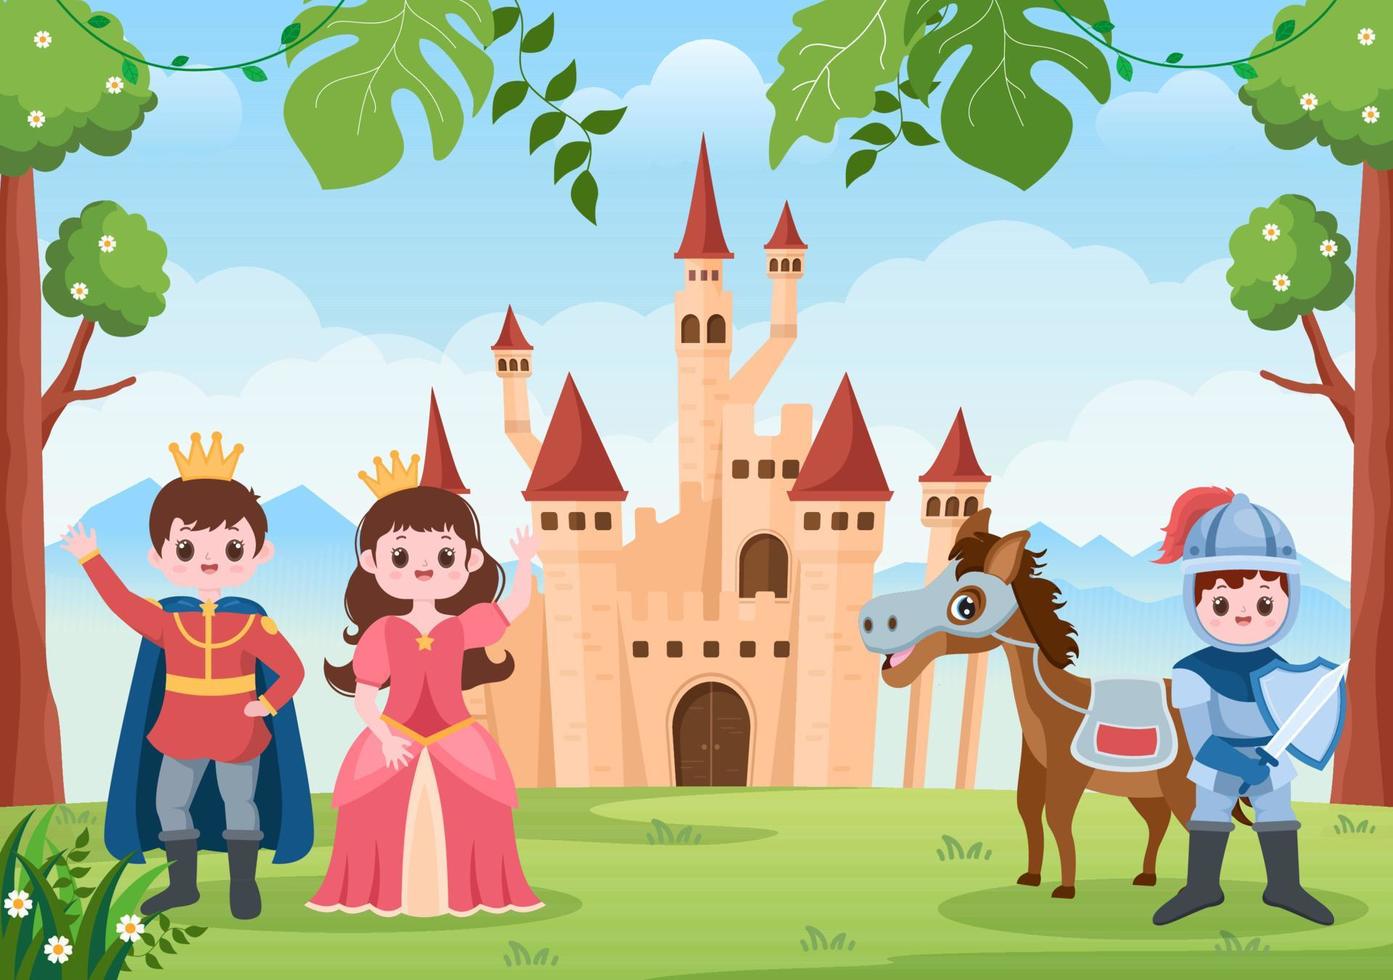 principe, regina e cavaliere con cavallo davanti al castello con maestosa architettura del palazzo e fiabesco come uno scenario forestale in stile piatto cartone animato vettore